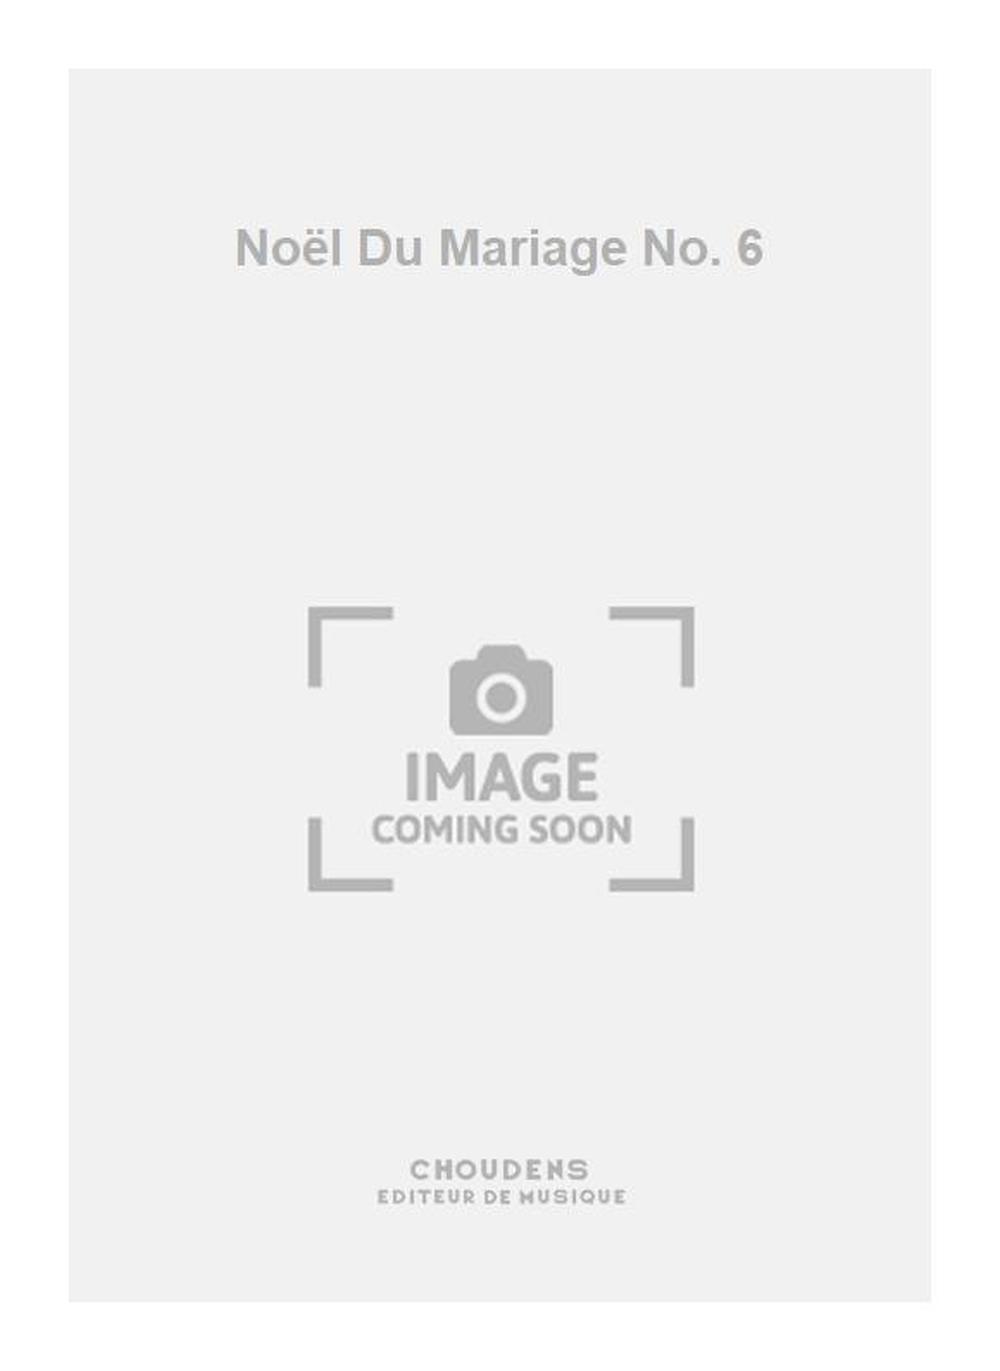 Nol Du Mariage No. 6